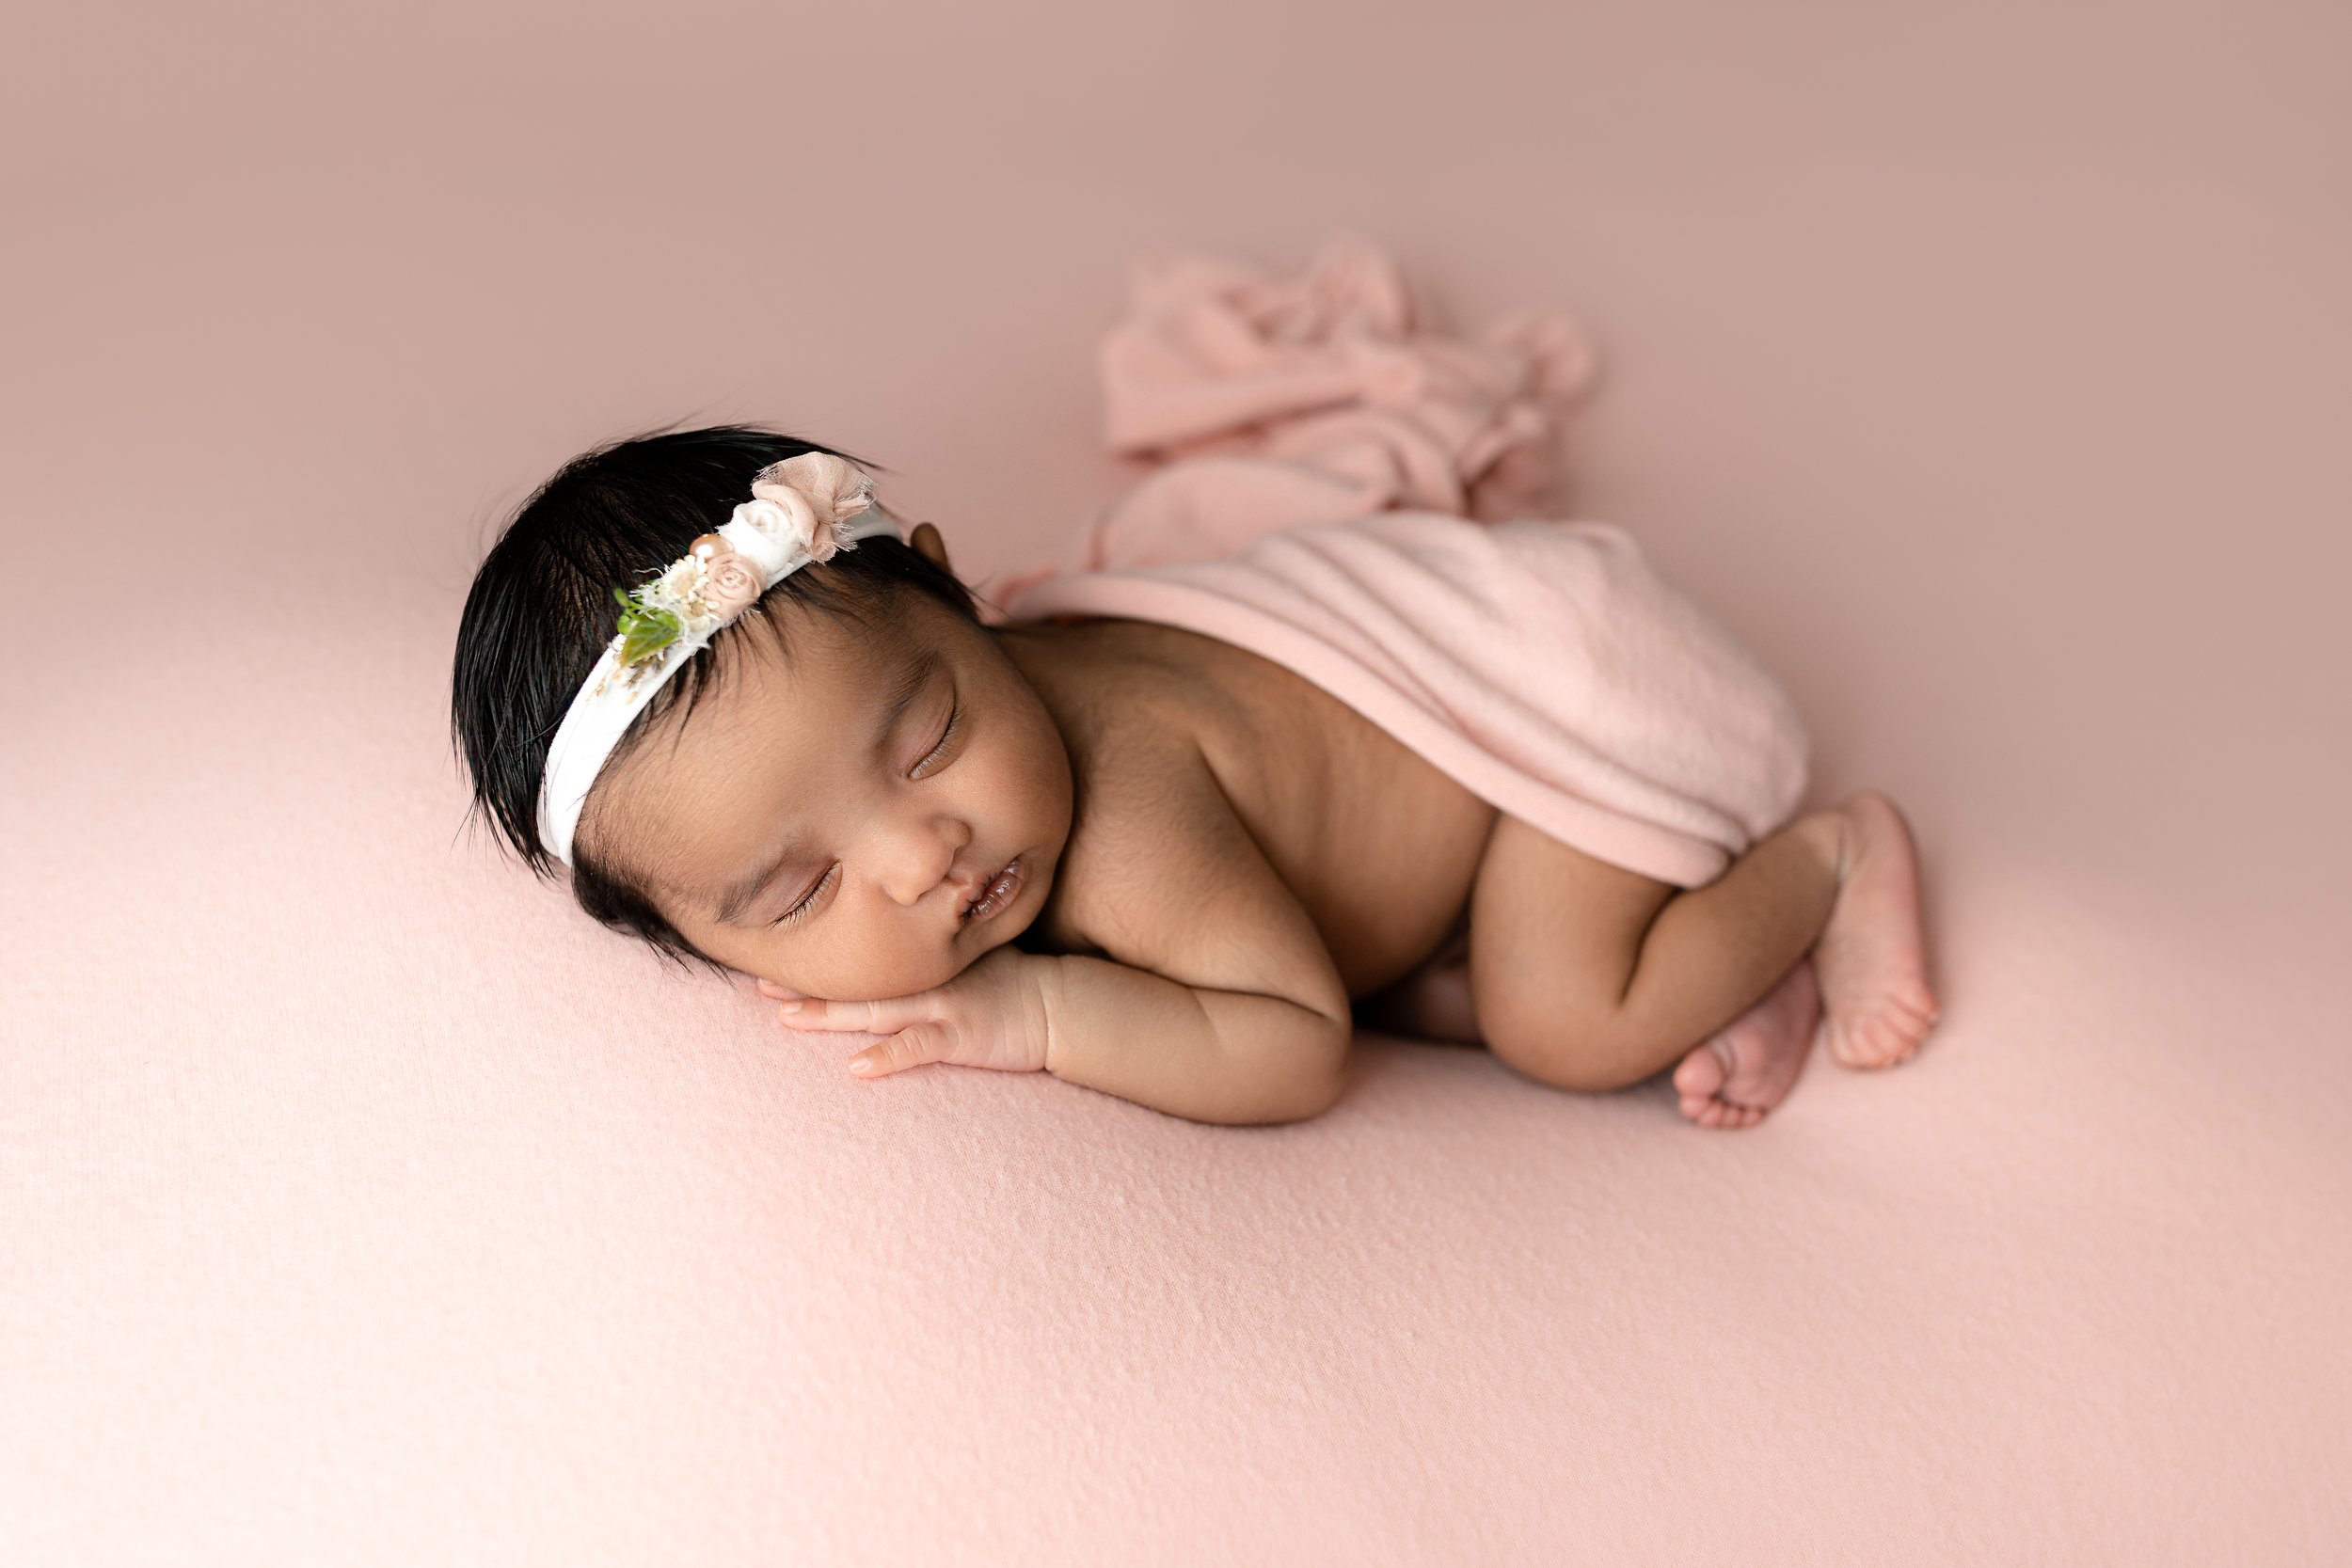 sasha-columbus-newborn-photographer-49.jpg